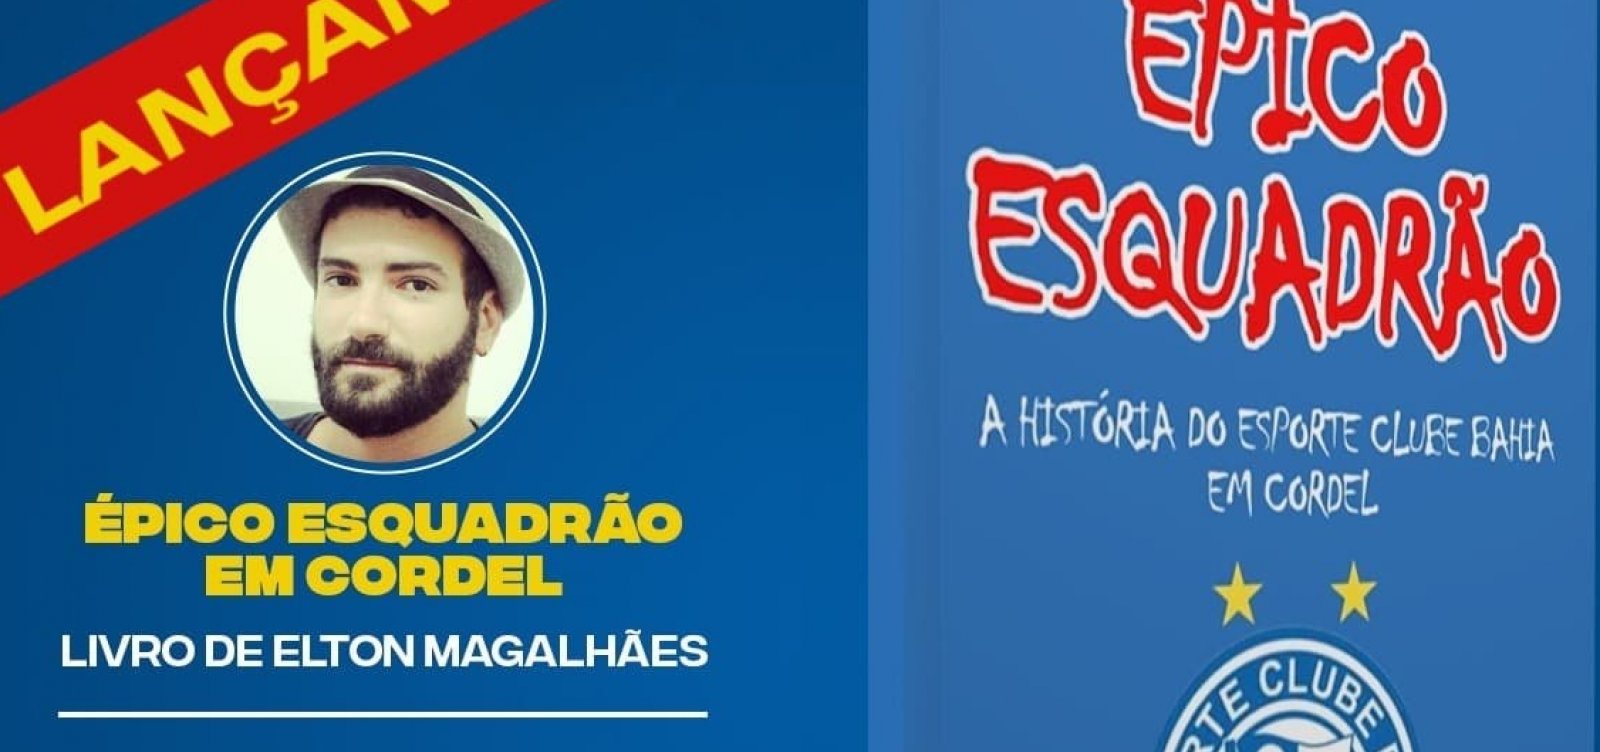 Professor lança livro em cordel sobre a história do Bahia